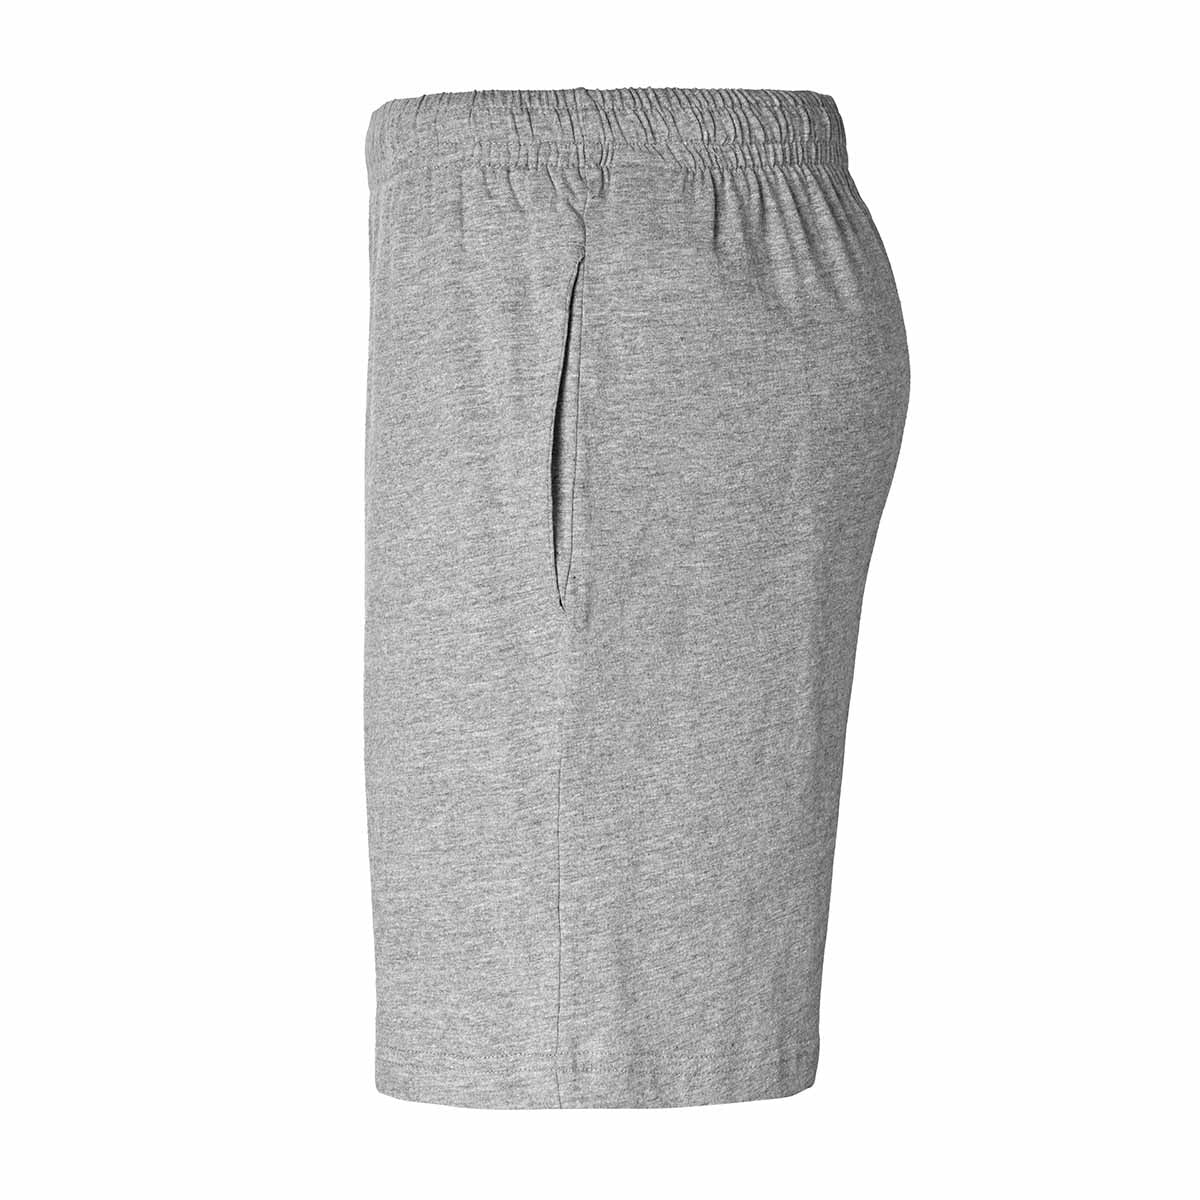 Pantalón Corto Kappa Cabas - Ropa Ideal Para El Gim O Entrenar  MKP